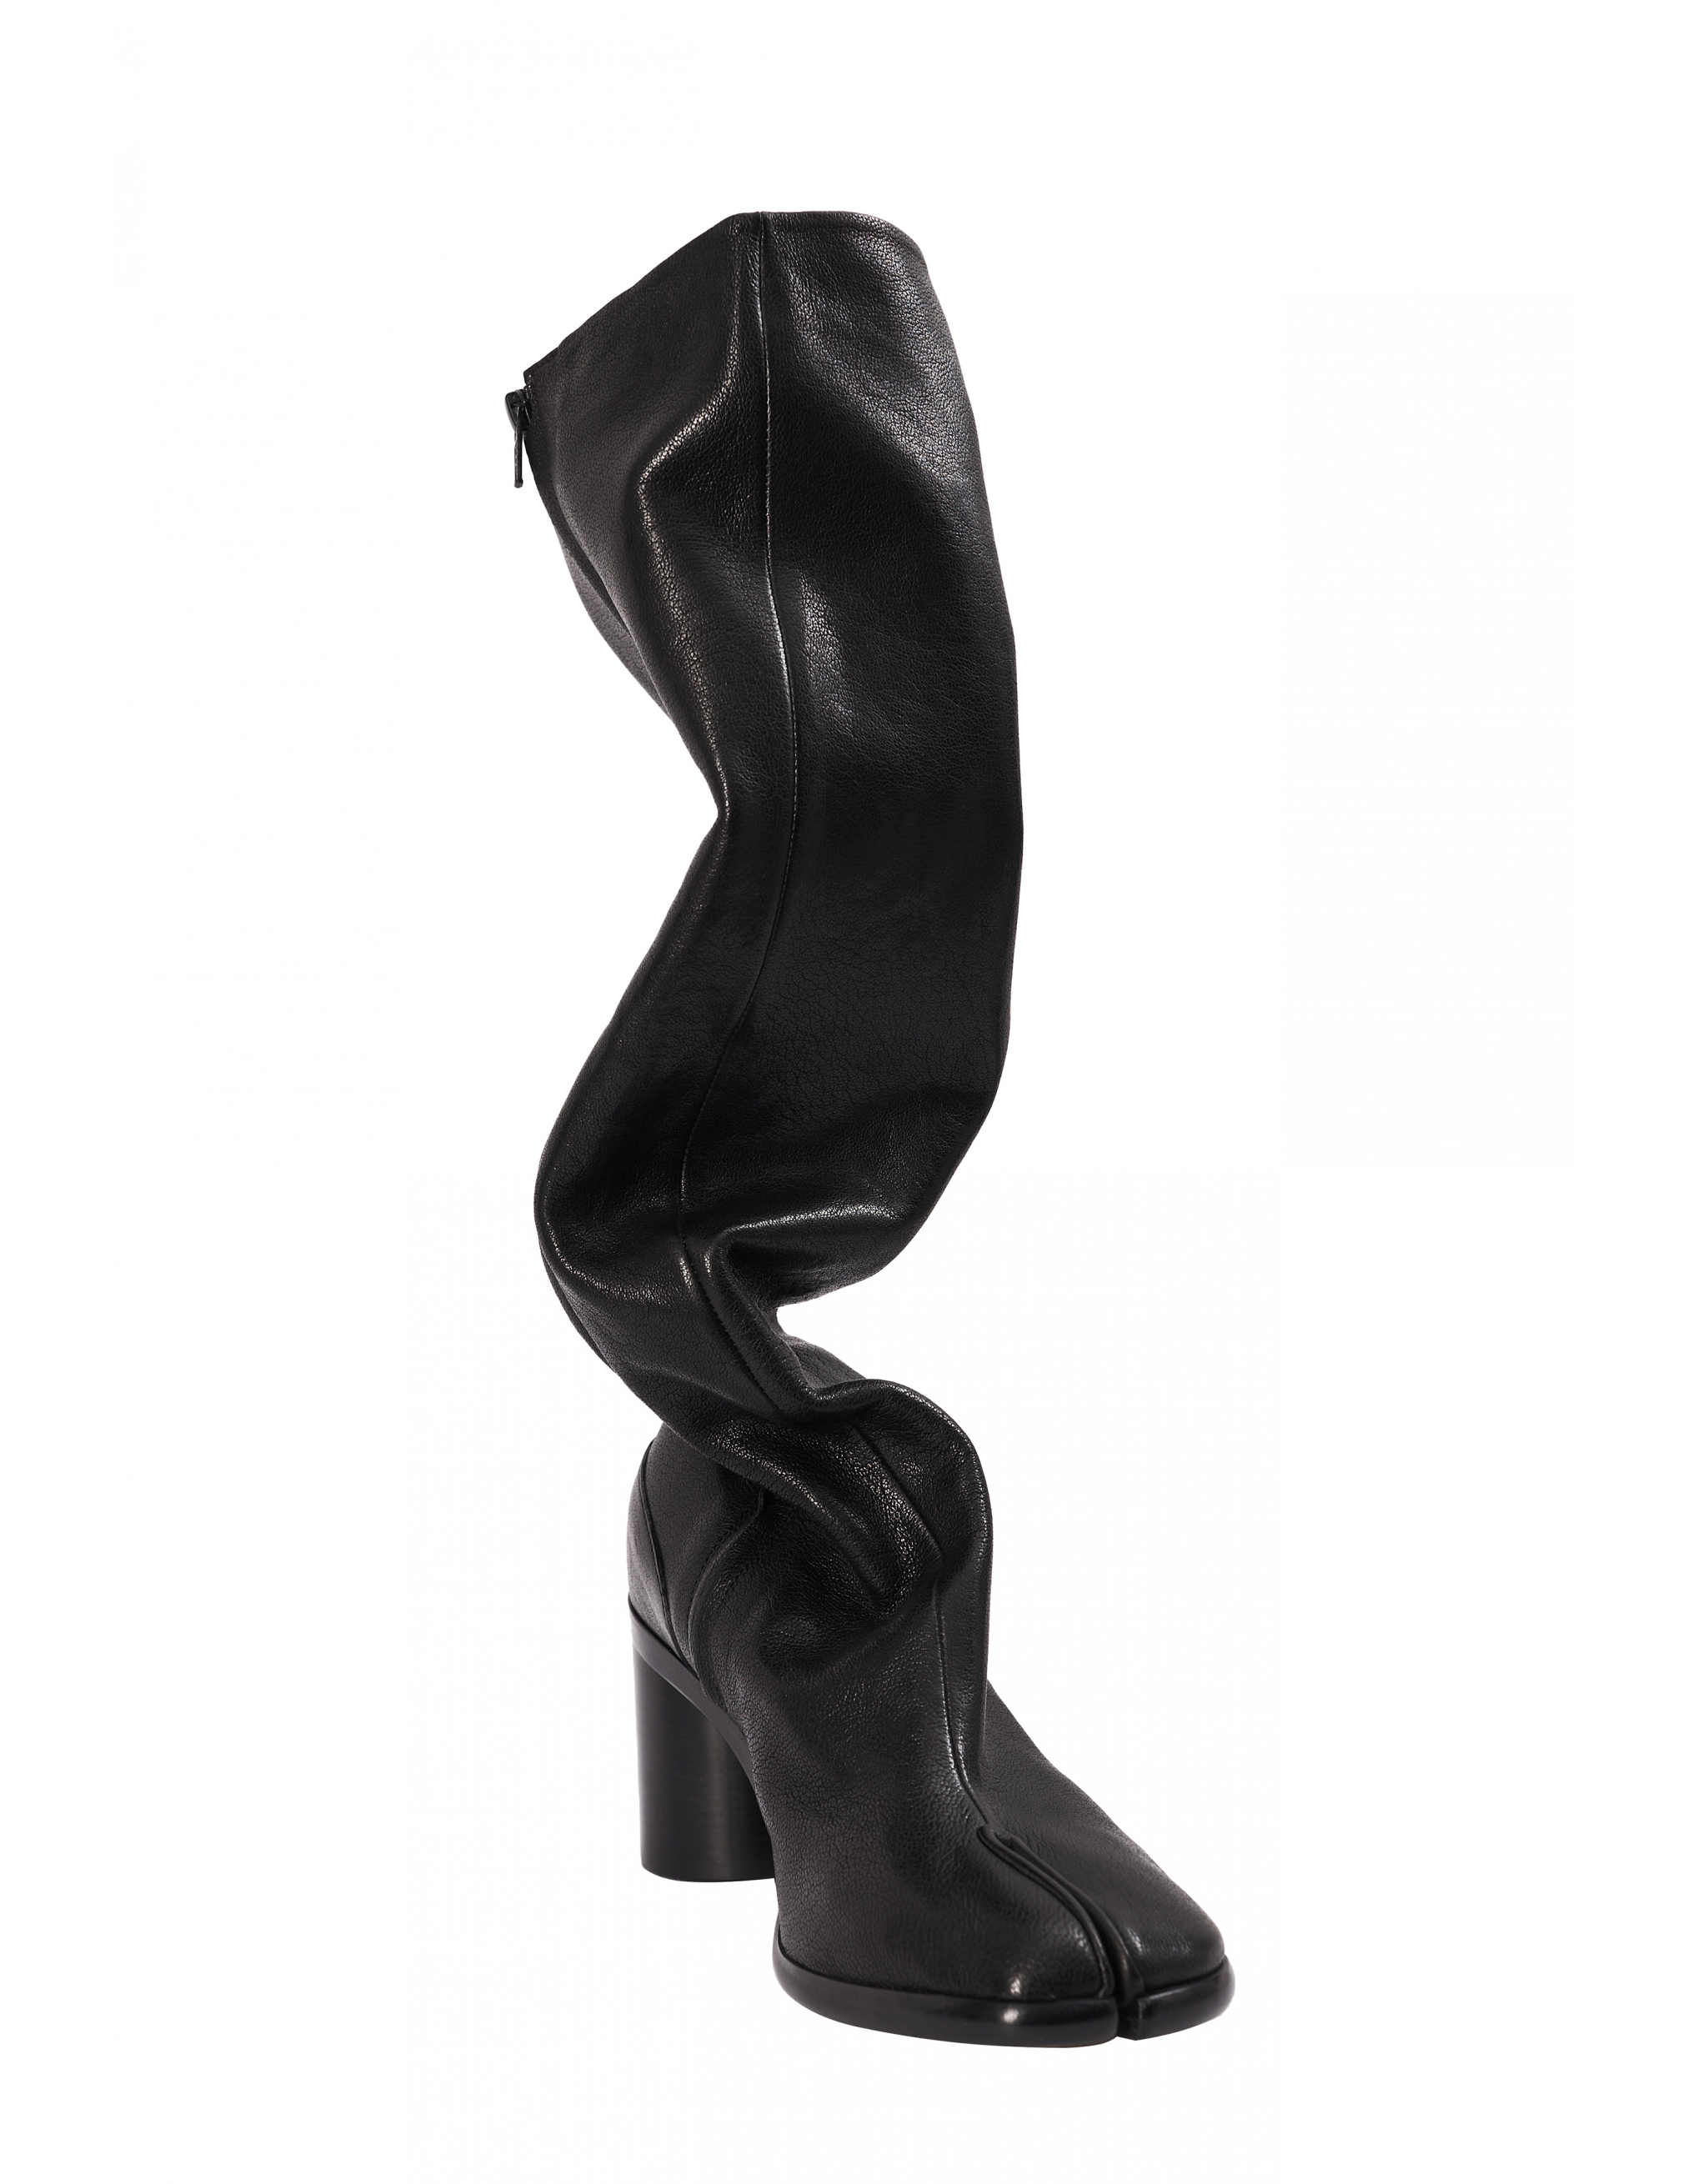 Черные кожаные сапоги Tabi Maison Margiela S34WW0057/P3753/T8013, размер 41;40;39;38;36 S34WW0057/P3753/T8013 - фото 6